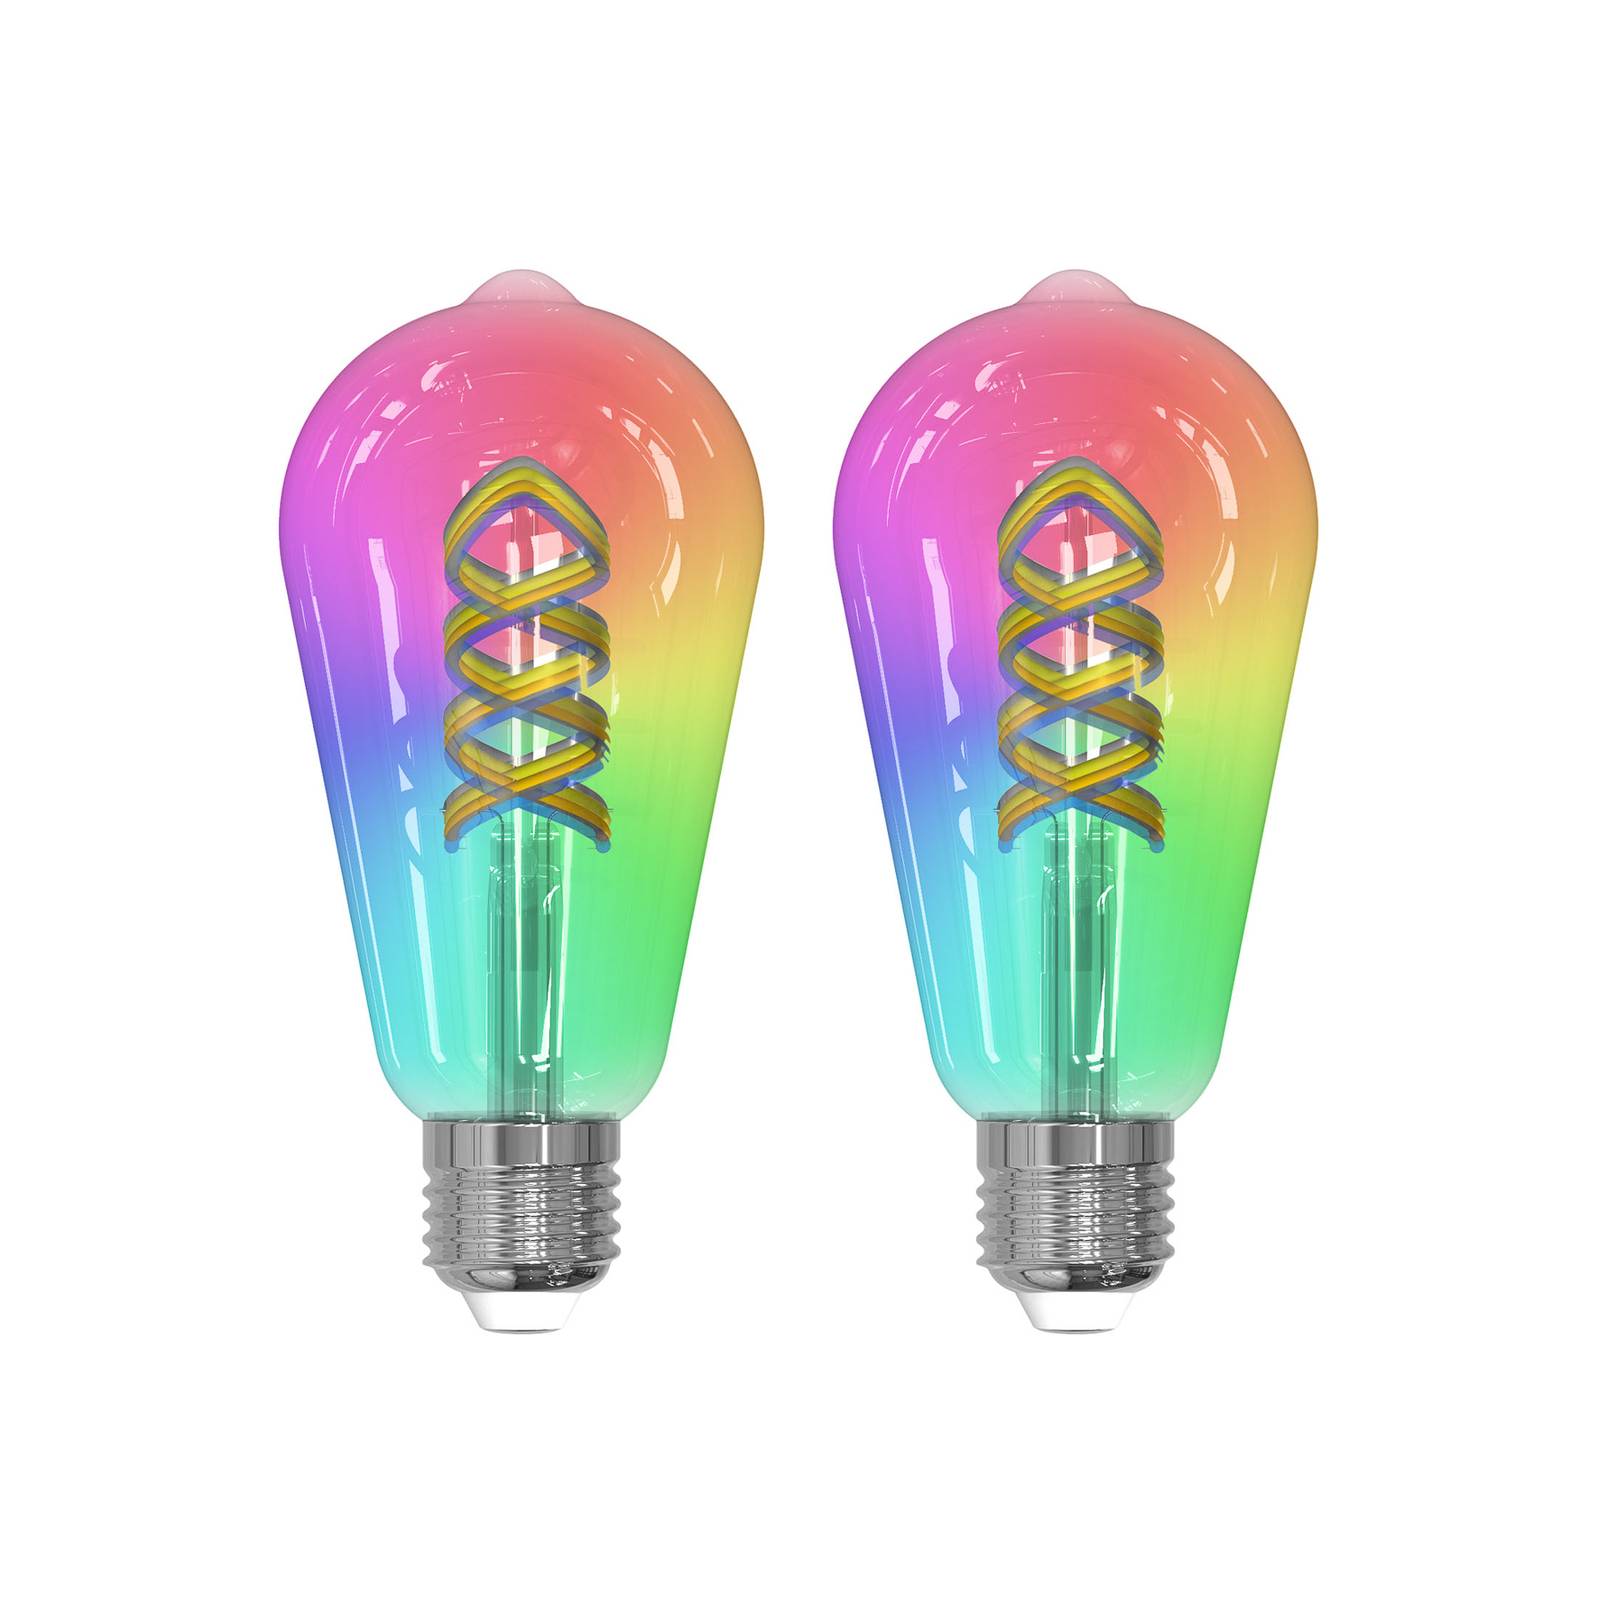 Prios LED-filament E27 ST64 4W RGB WLAN klar 2 stk